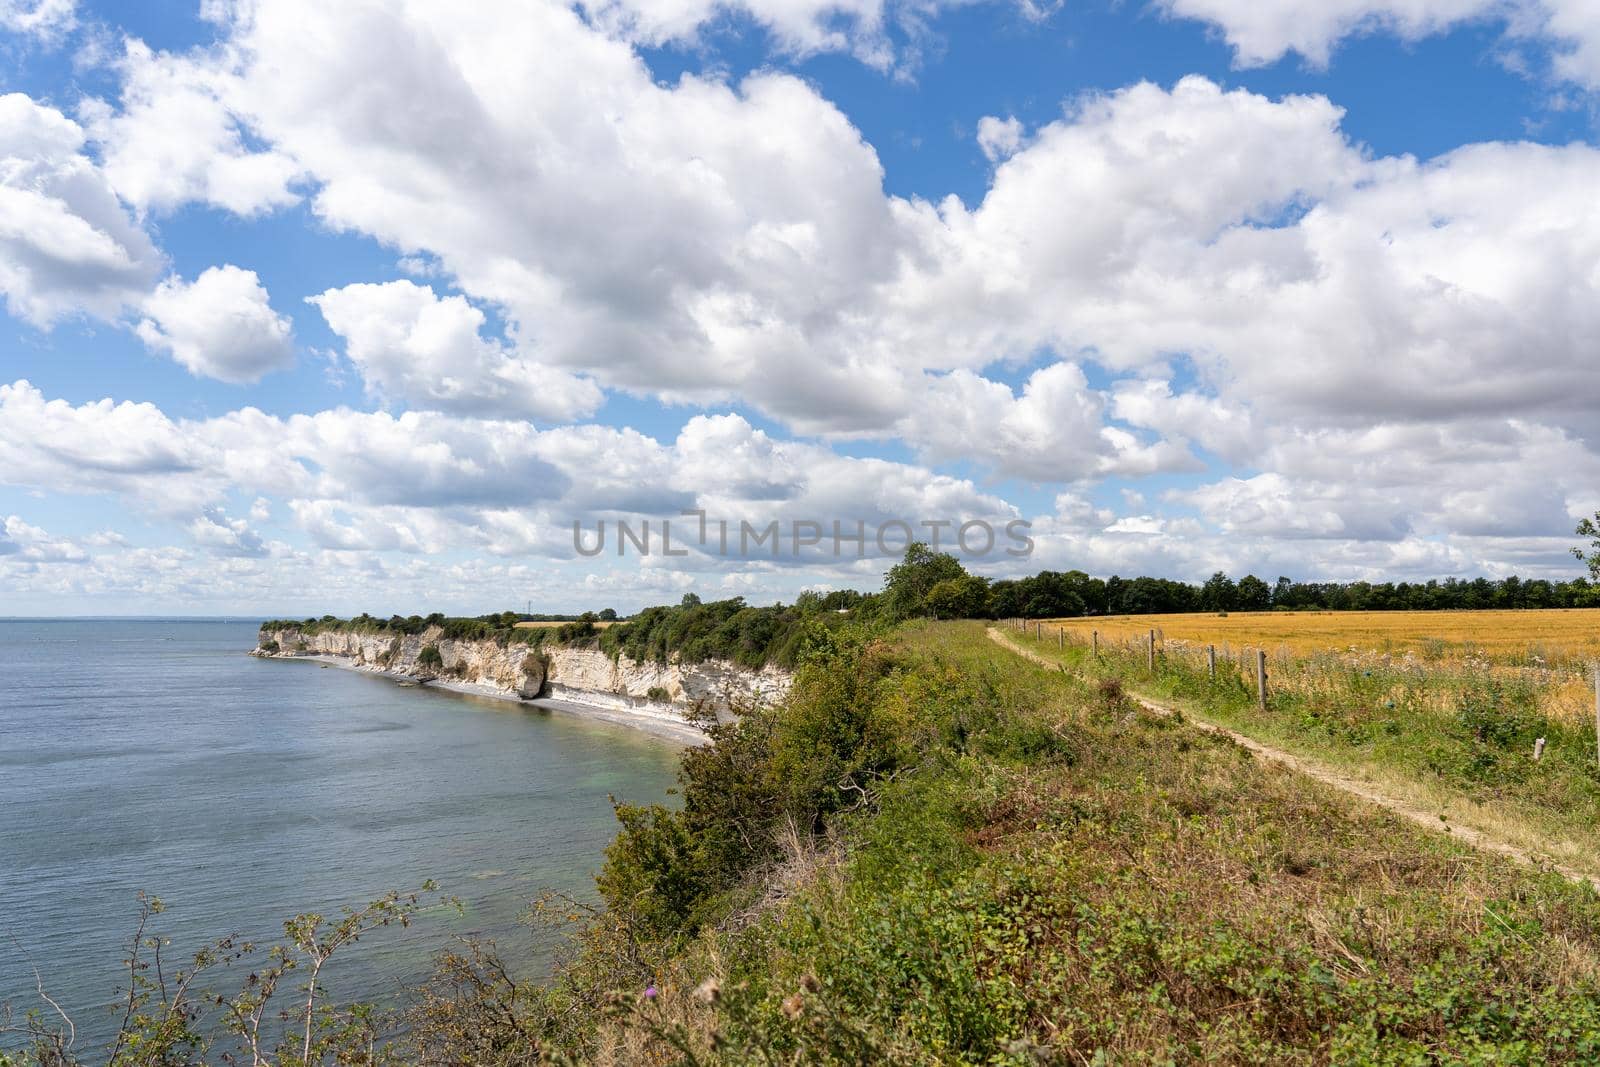 Hojerup, Denmark - July 21, 2020: View of the coastline at Stevns Klint cliff